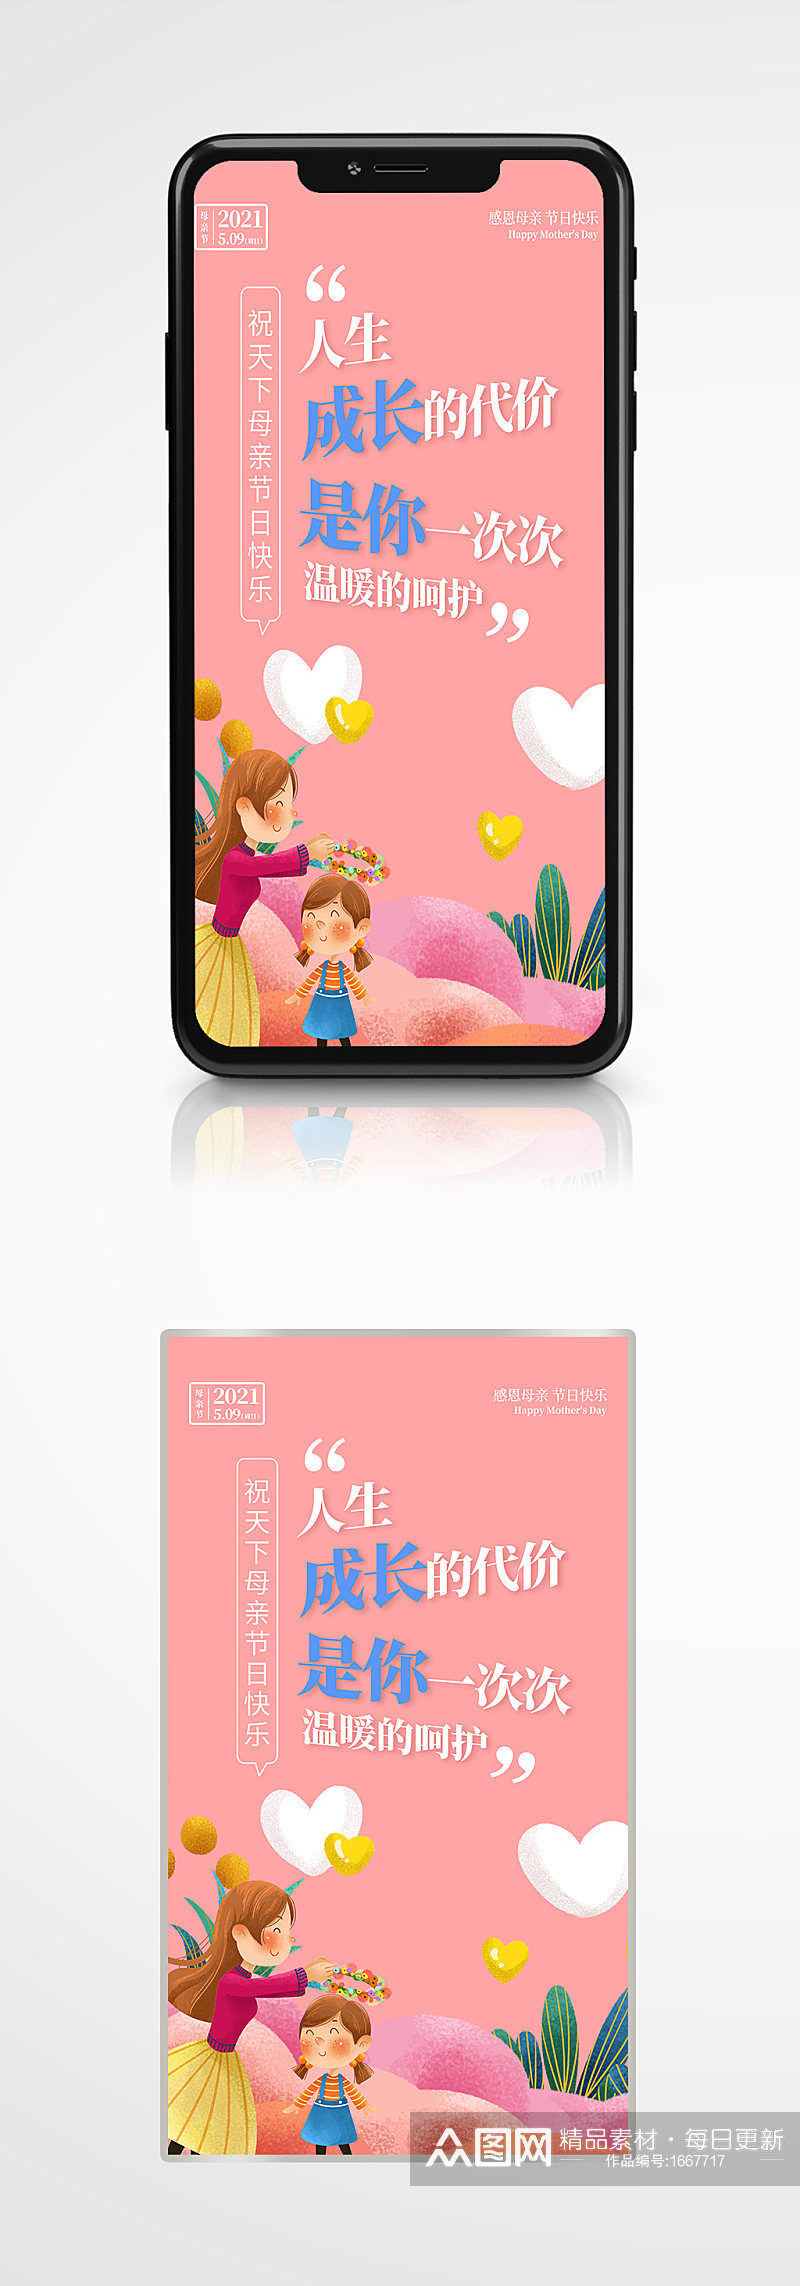 粉色插画风格母亲节手机海报素材